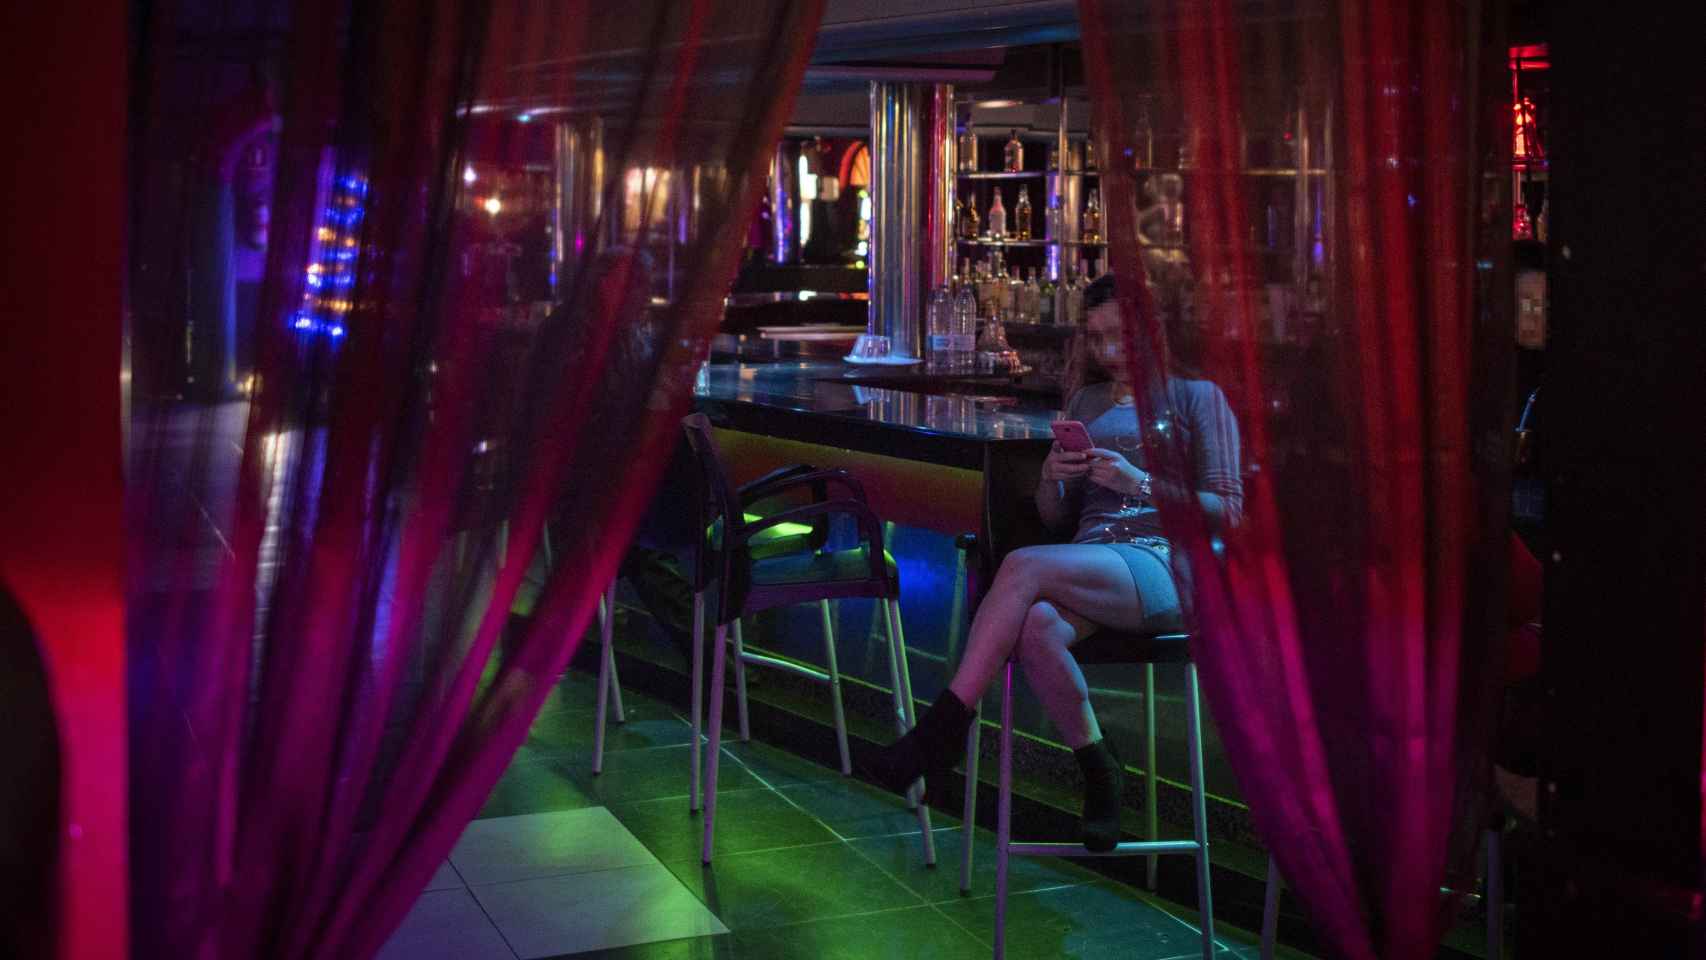 Una prostituta espera clientes en el club Las Torres. El dueño del negocio permite el acceso a un equipo de EL ESPAÑOL.